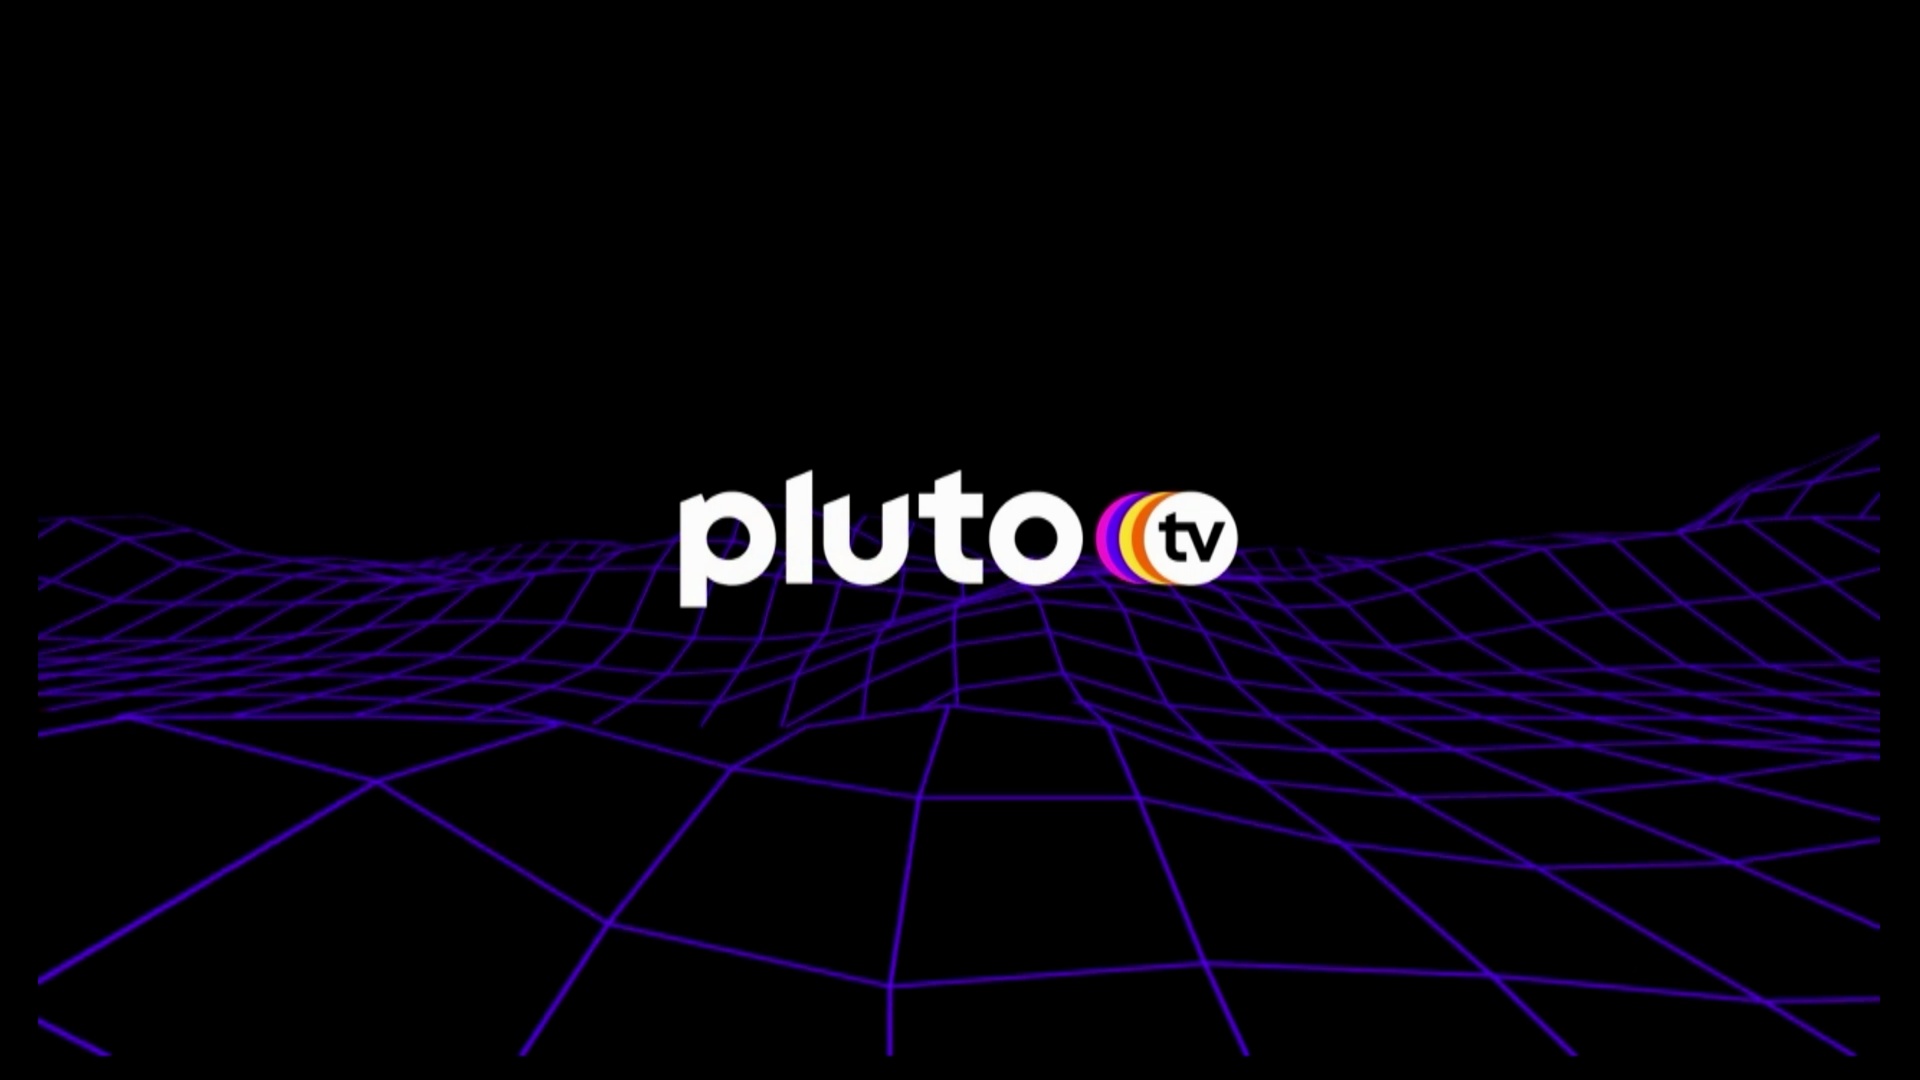 #Pluto TV zeigt im April Fantastisches aus anderen Galaxien